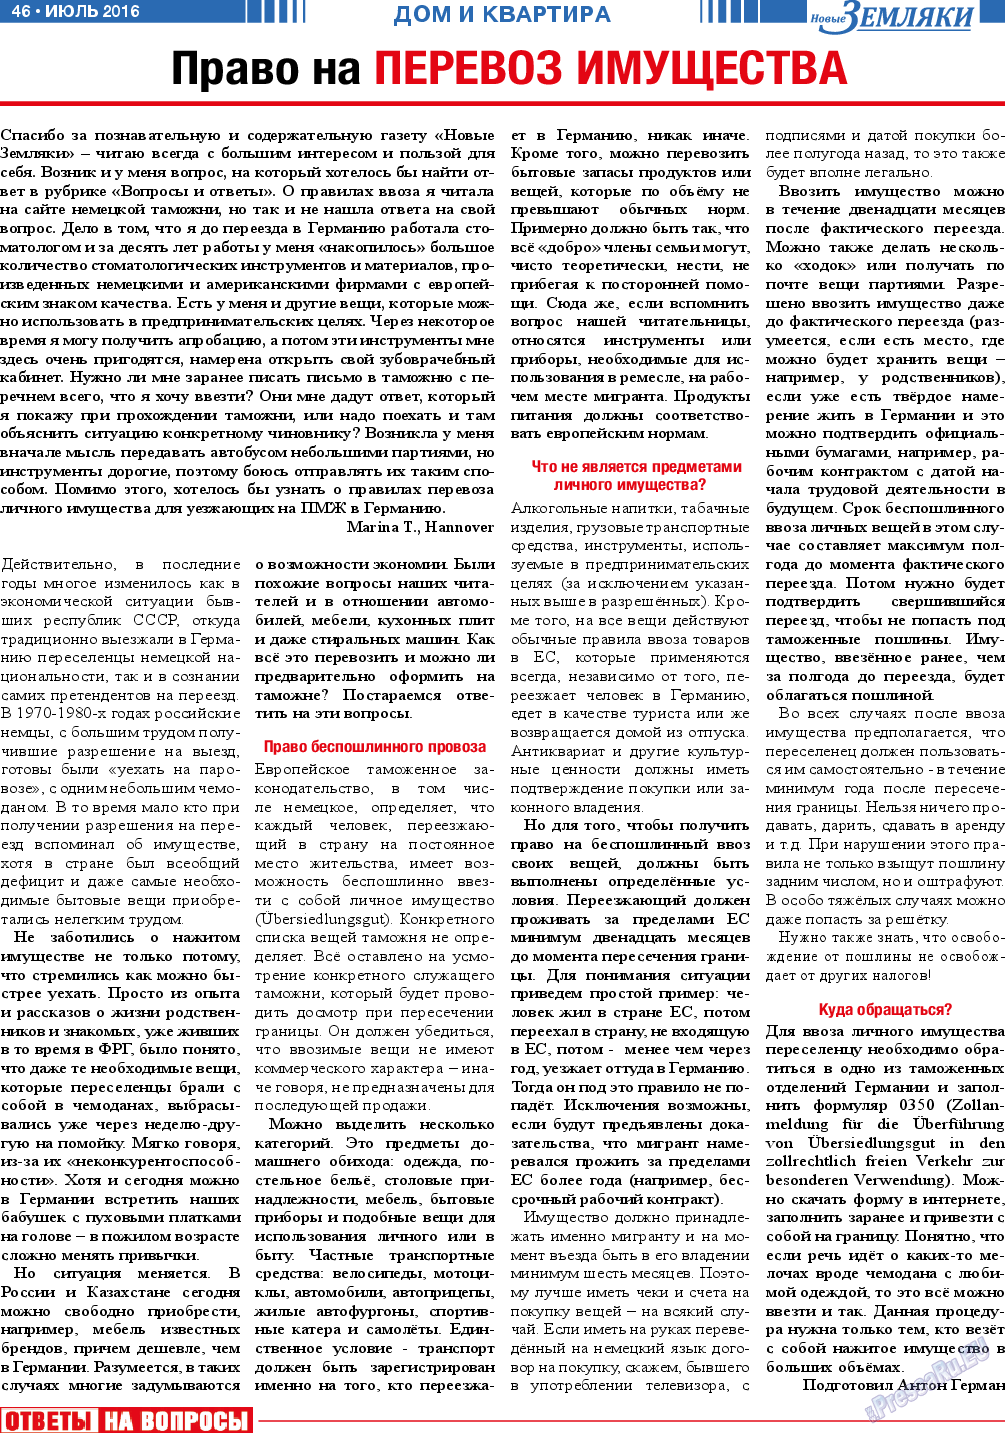 Новые Земляки, газета. 2016 №7 стр.46